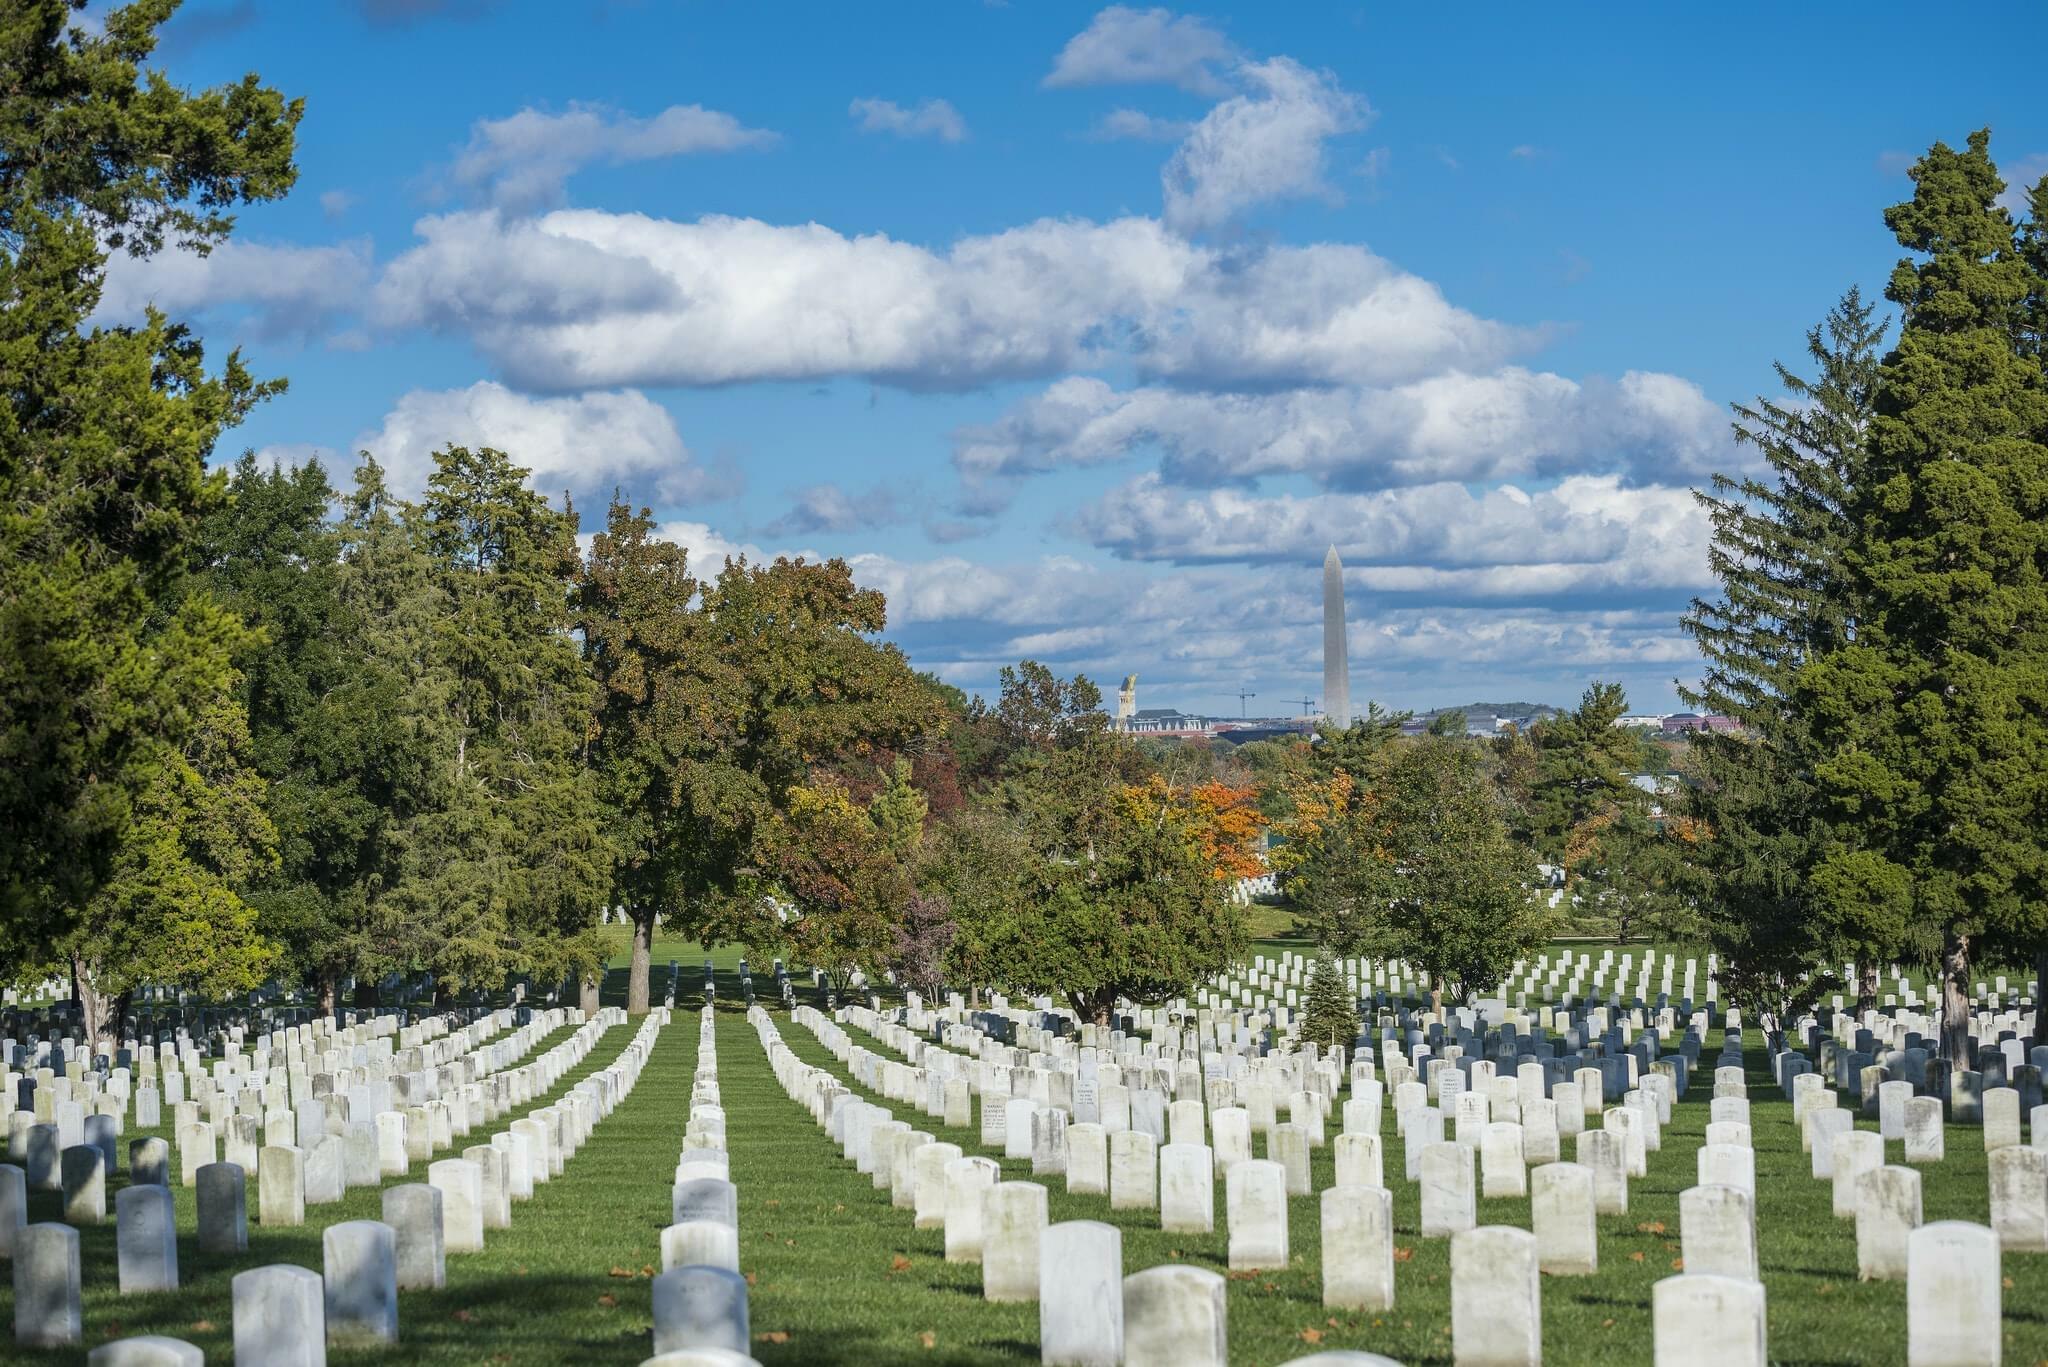 The Arlington National Cemetery